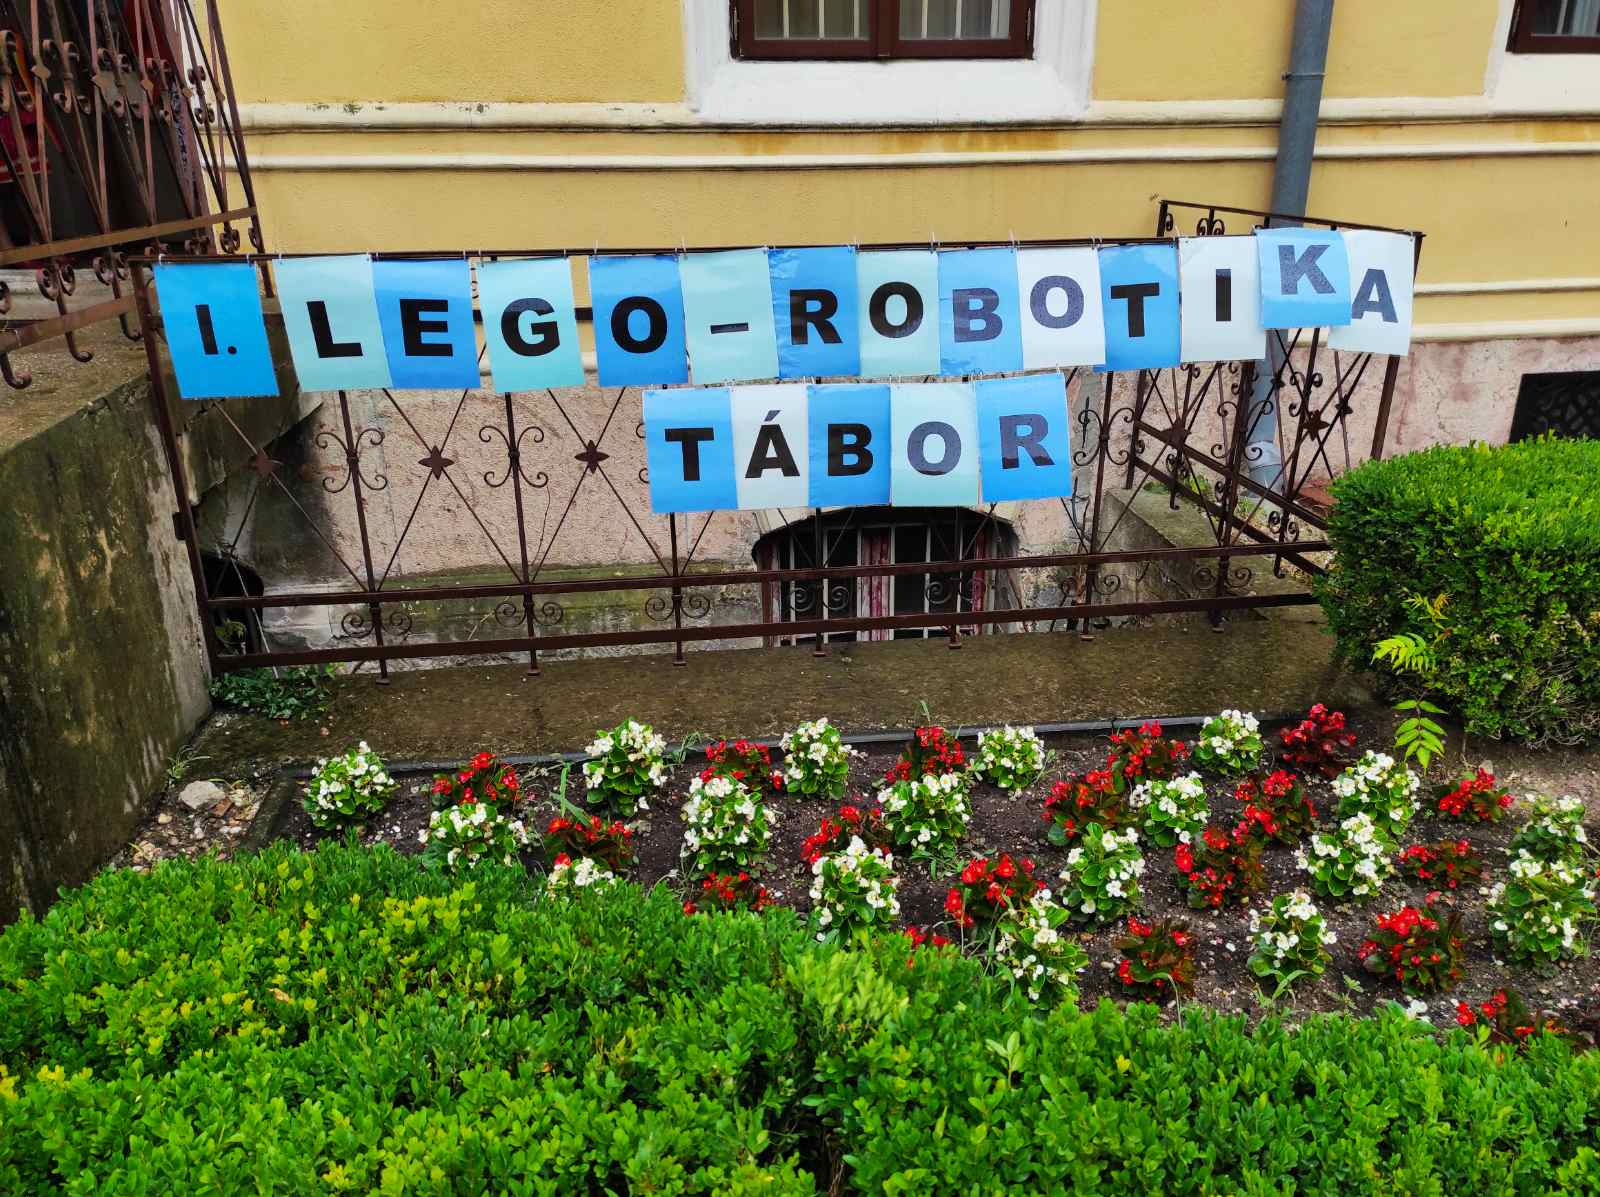 Lego-robotika tábor és egyéb Komáromban